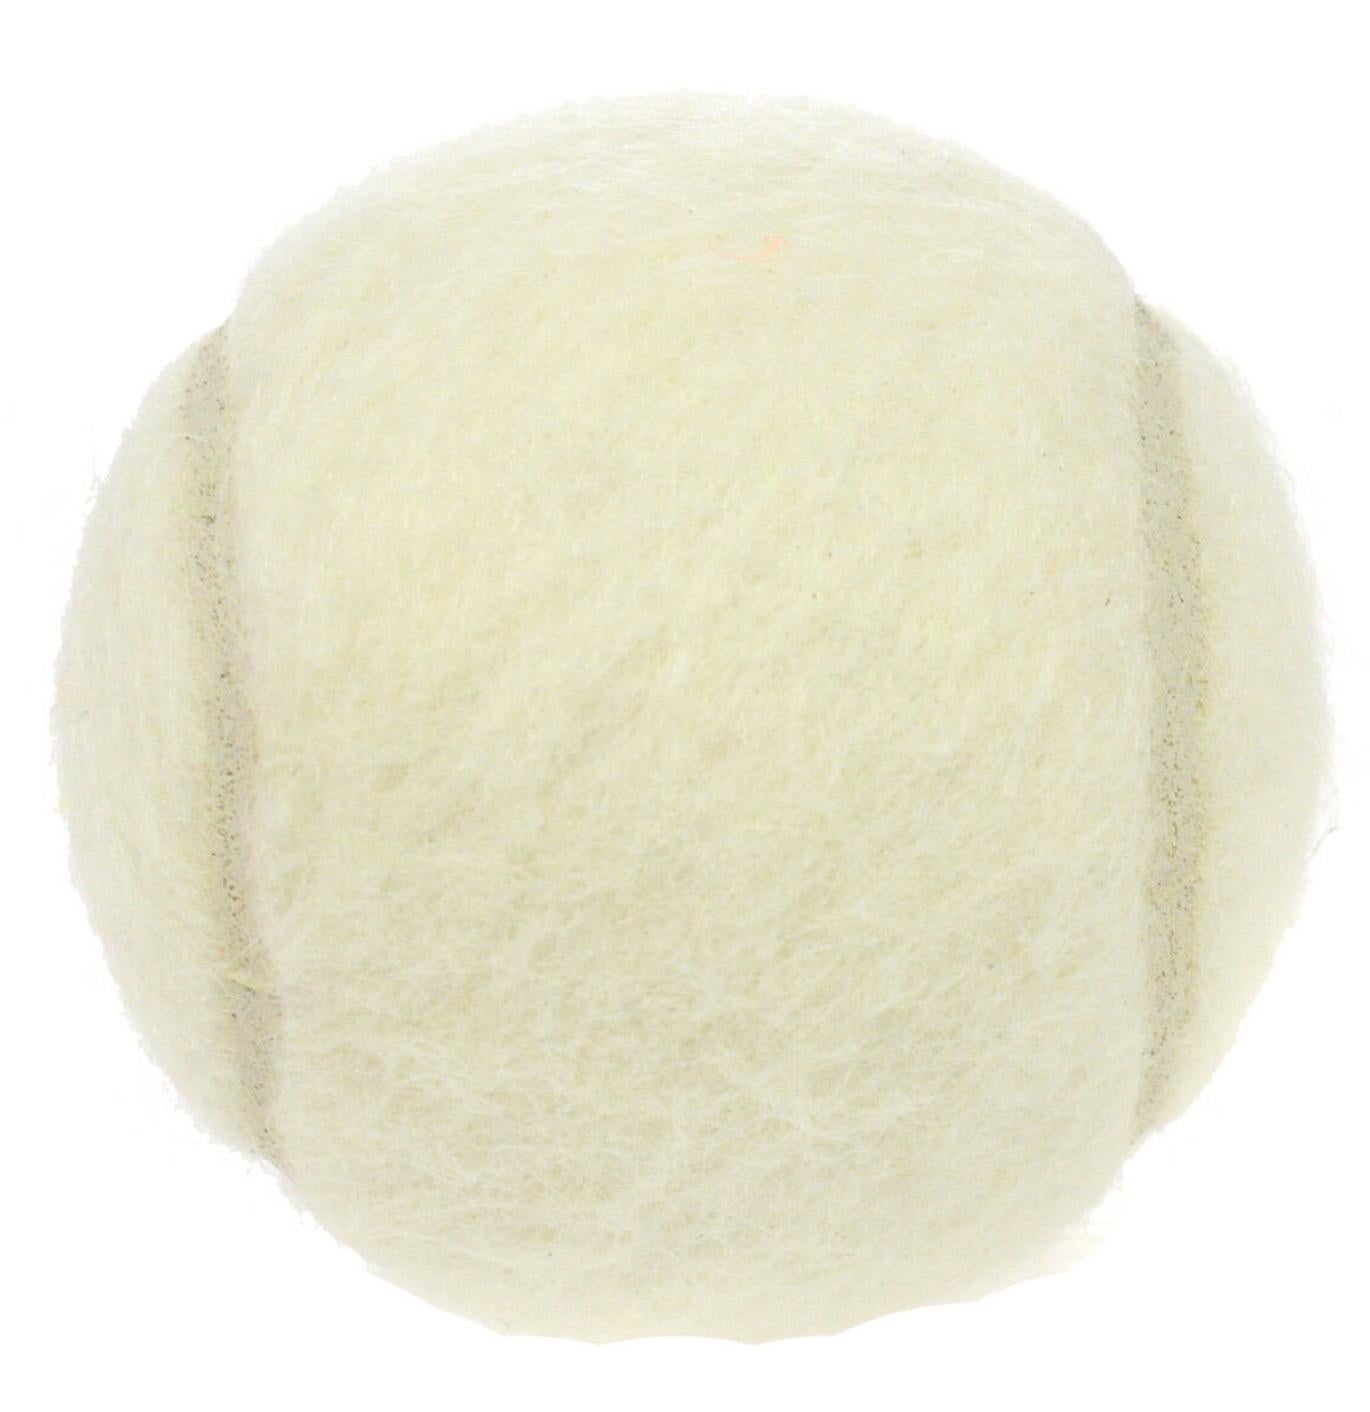 
Wool
Nylon blend
Diameter 2.5